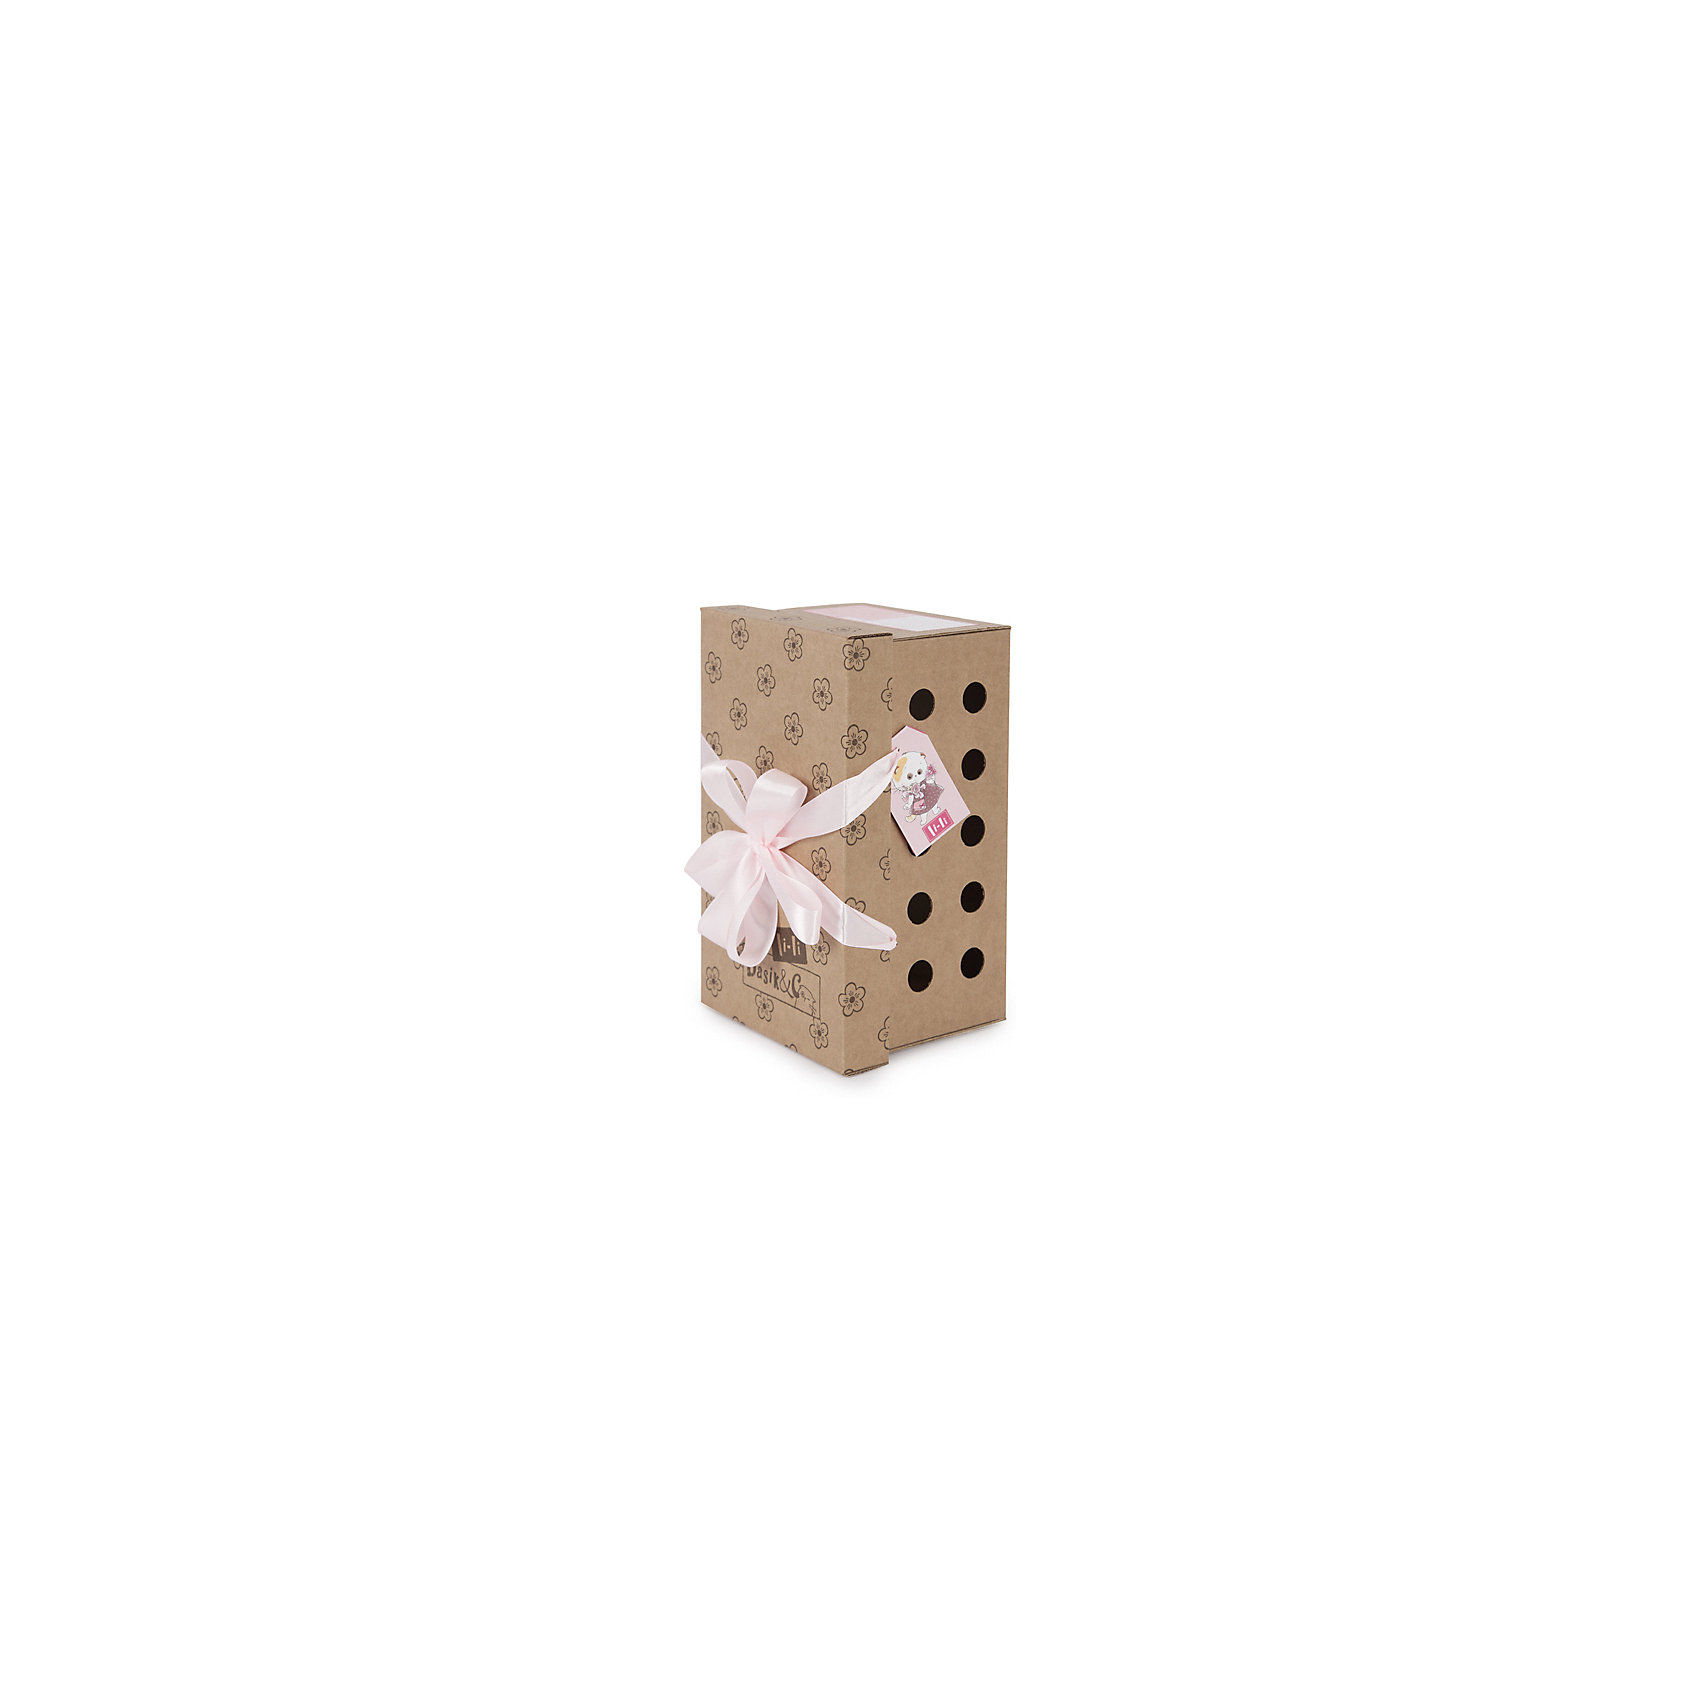 Мягкая игрушка Кошечка Ли-Ли в платье с цветочным принтом, 24 см Budi Basa 15448877